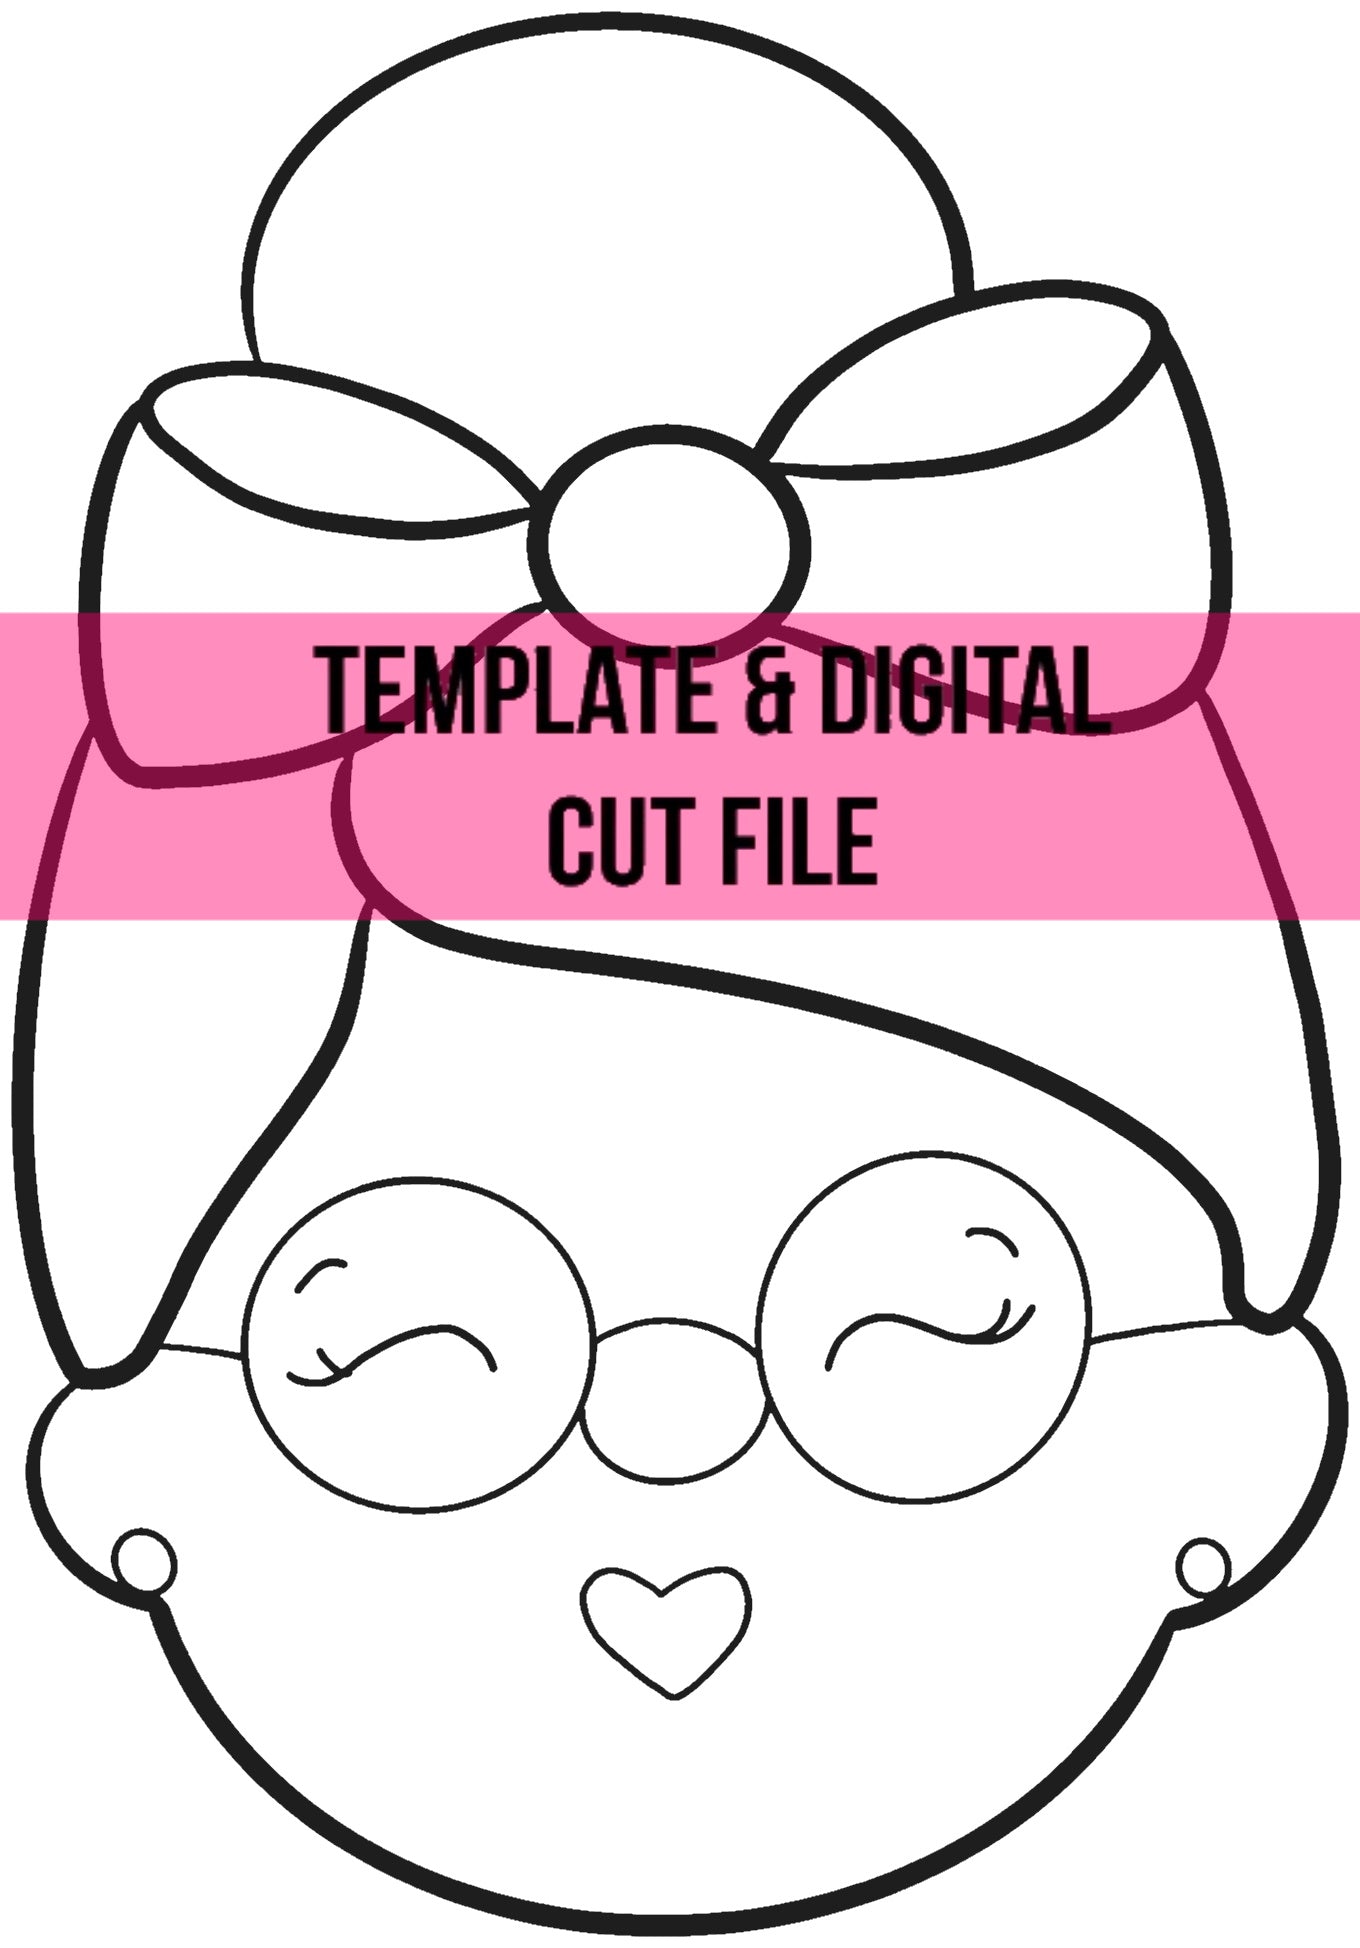 Mrs. Claus Template & Digital Cut File